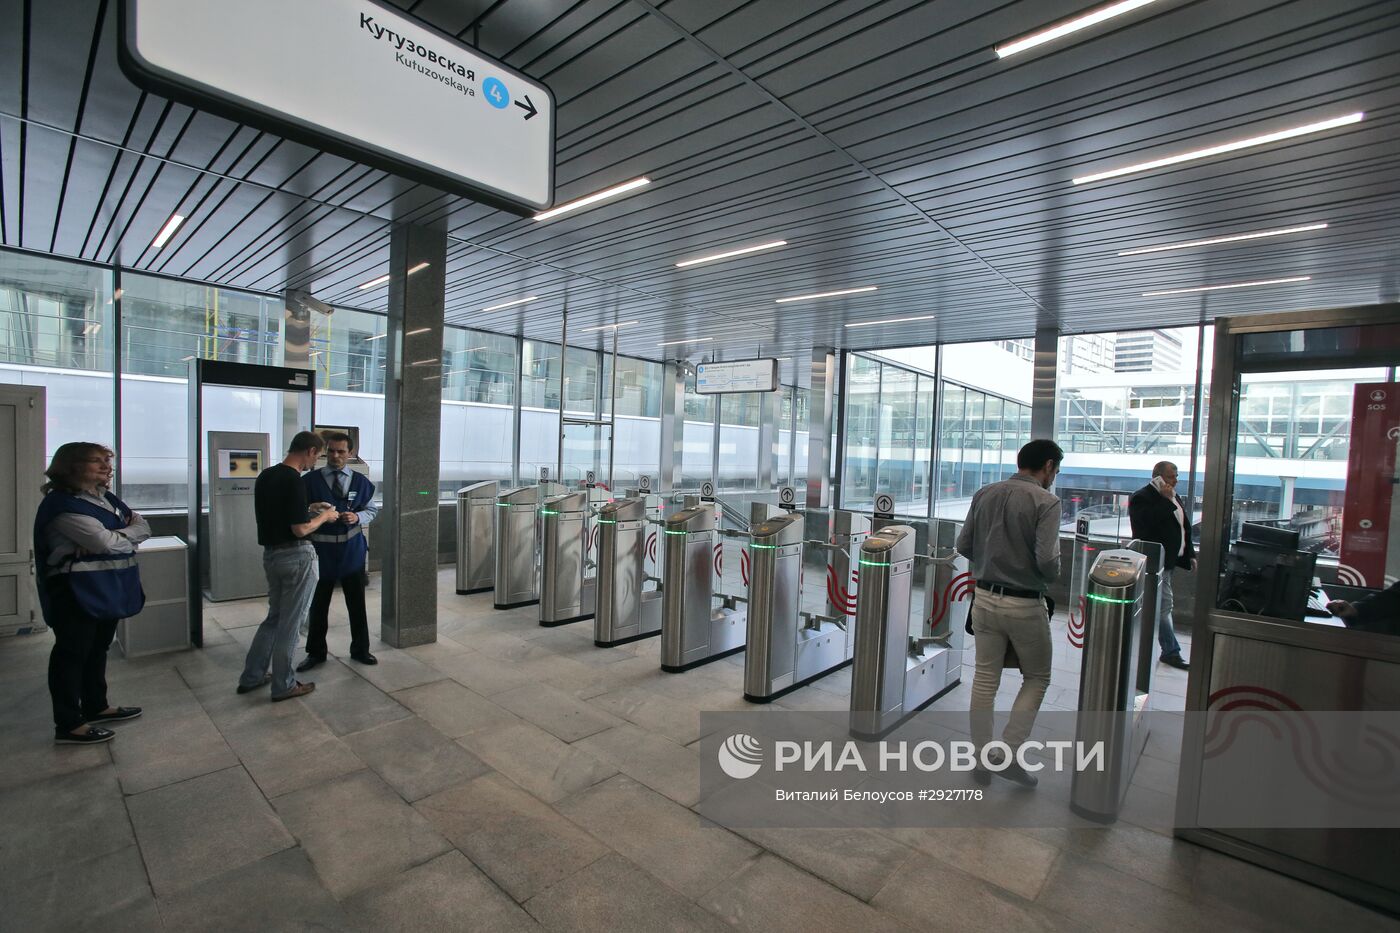 Открытие южного вестибюля станции метро "Кутузовская"